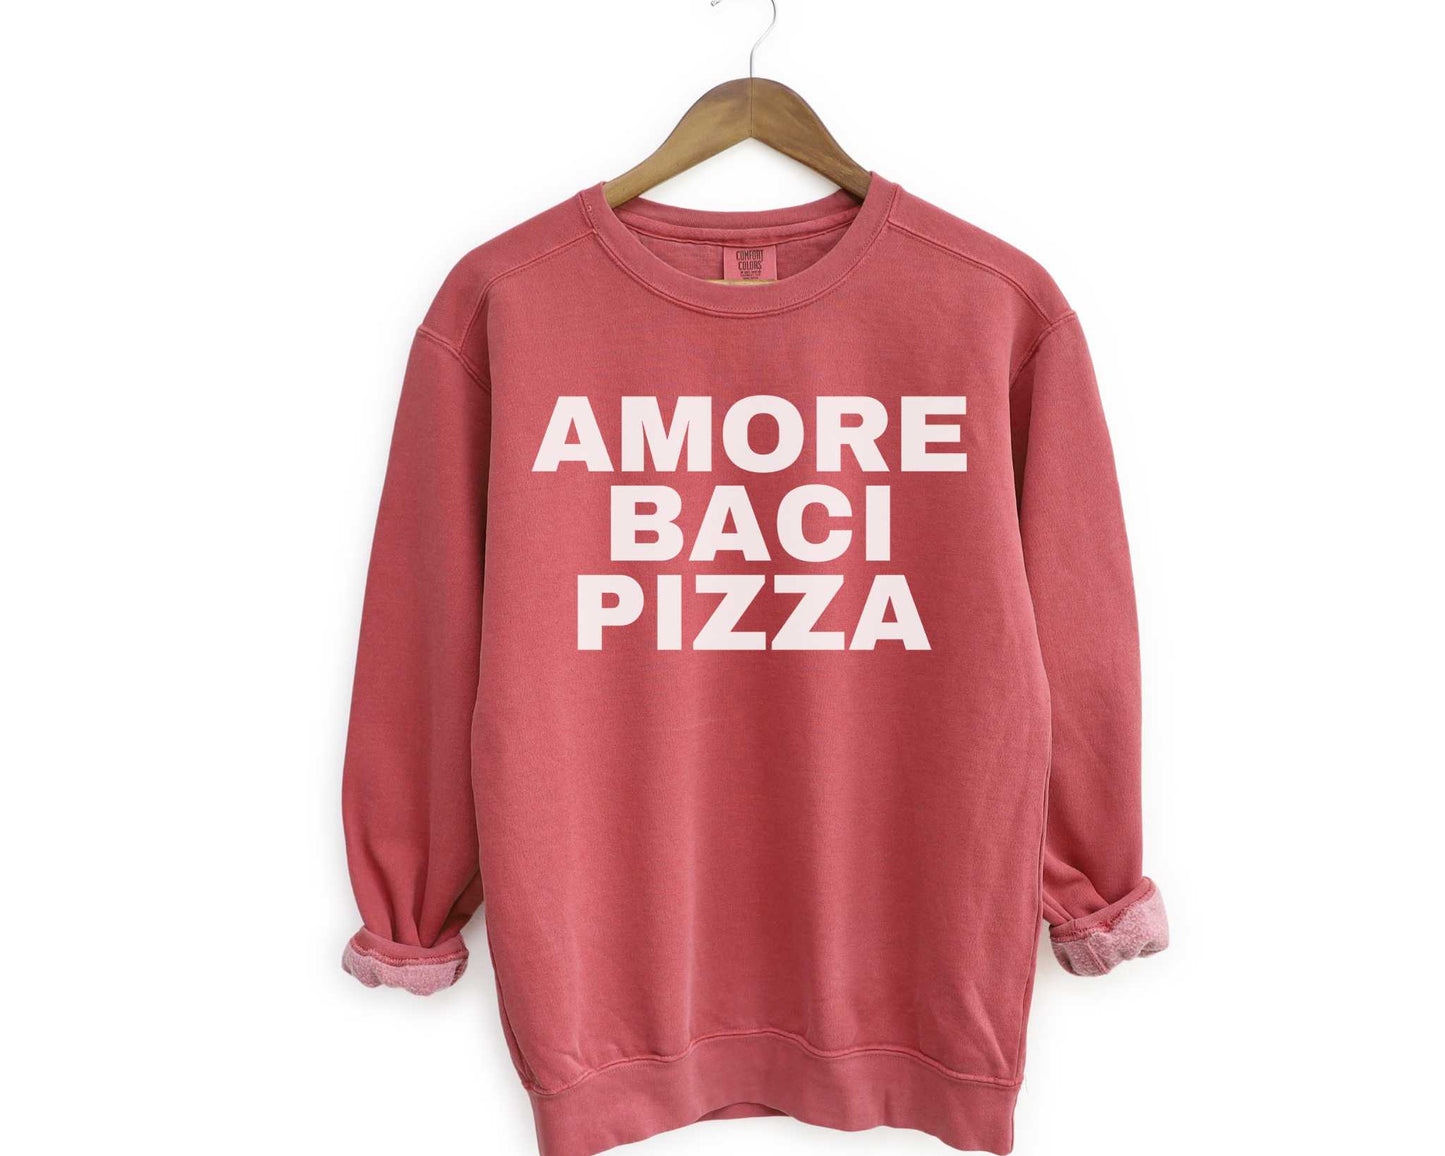 Amore Baci Pizza (Love Kisses Pizza) Sweatshirt in Crimson